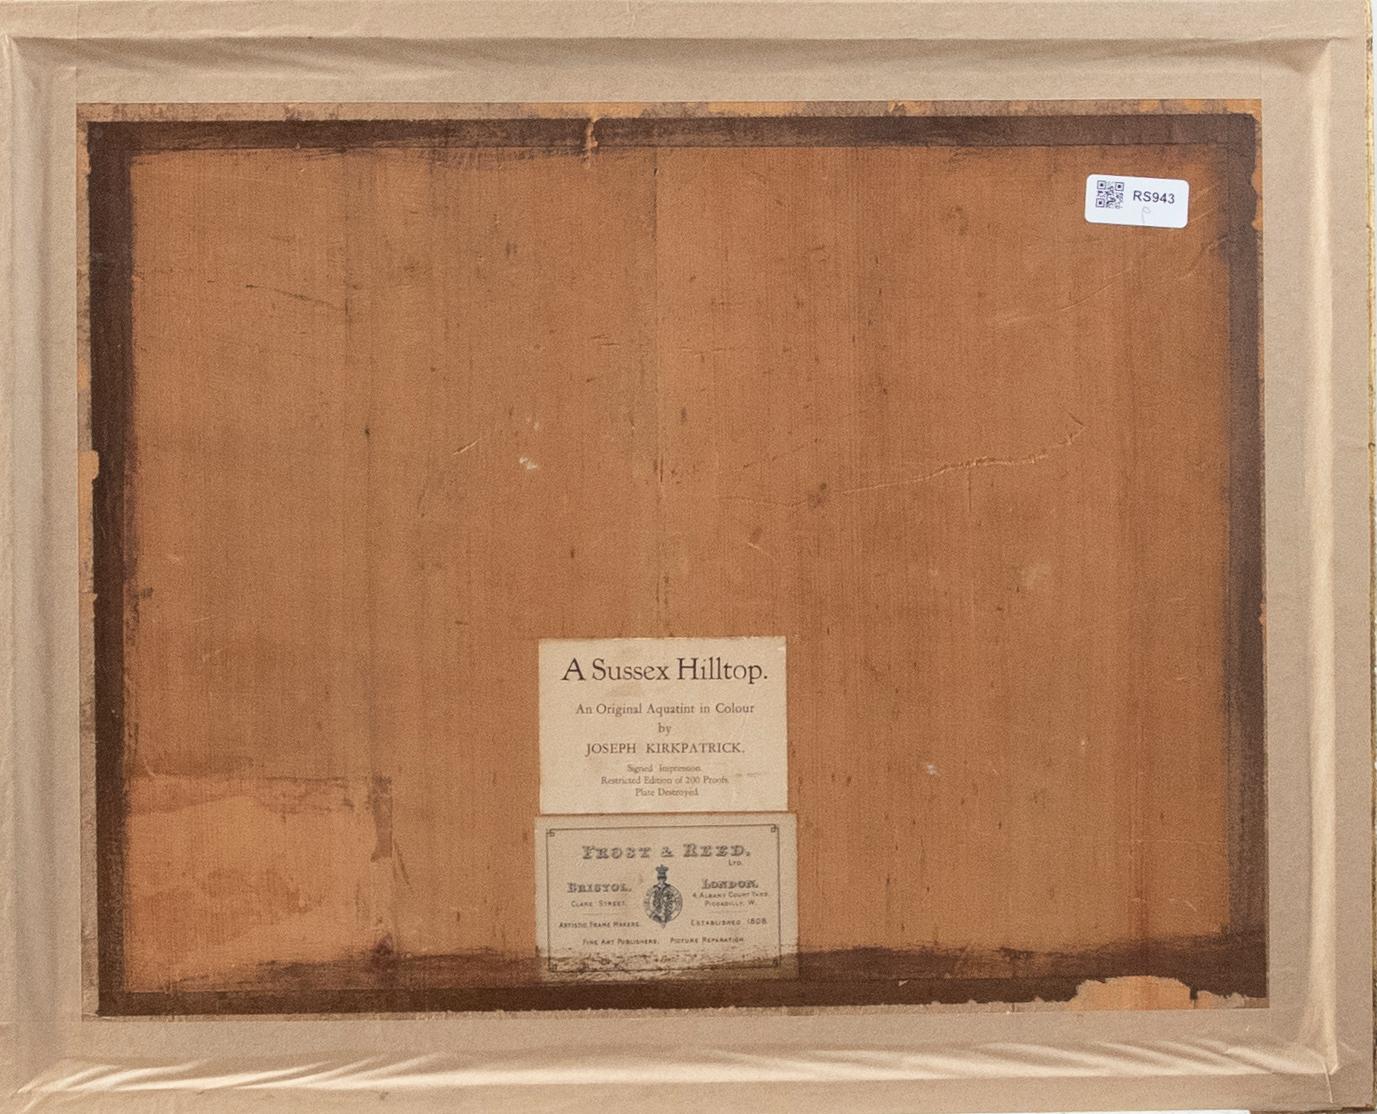 Ein Original-Aquatinta in Farben des britischen Künstlers Joseph Kirkpatrick (1872-1936). Elegant in einem vergoldeten Rahmen mit Original-Labels des Künstlers auf der Rückseite untergebracht. Aus einer limitierten Auflage von 200 Drucken. Signiert